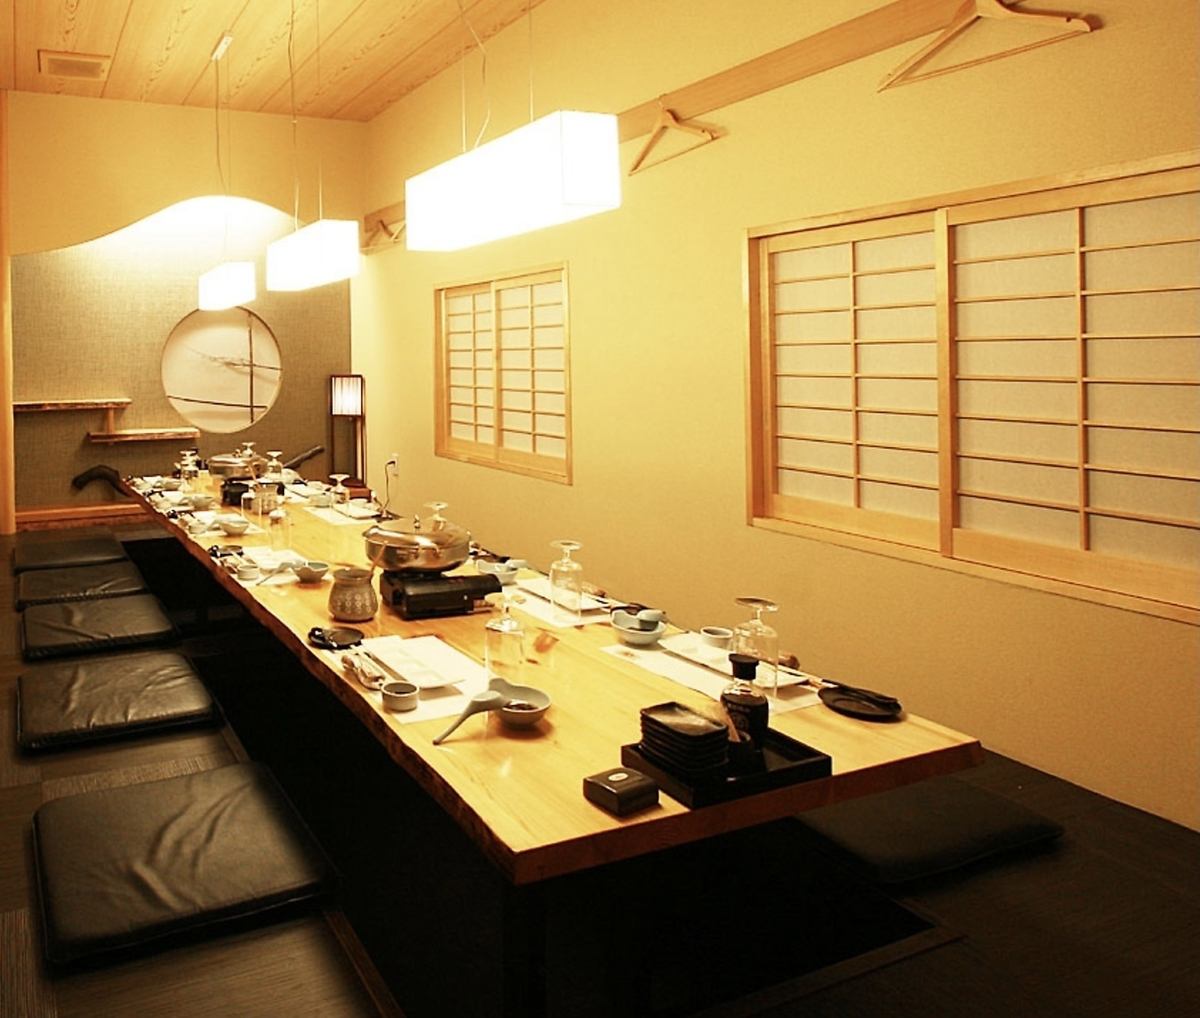 일본의 분위기를 맛볼 수있는 개인실에서 천천히 보내실 수 있습니다.